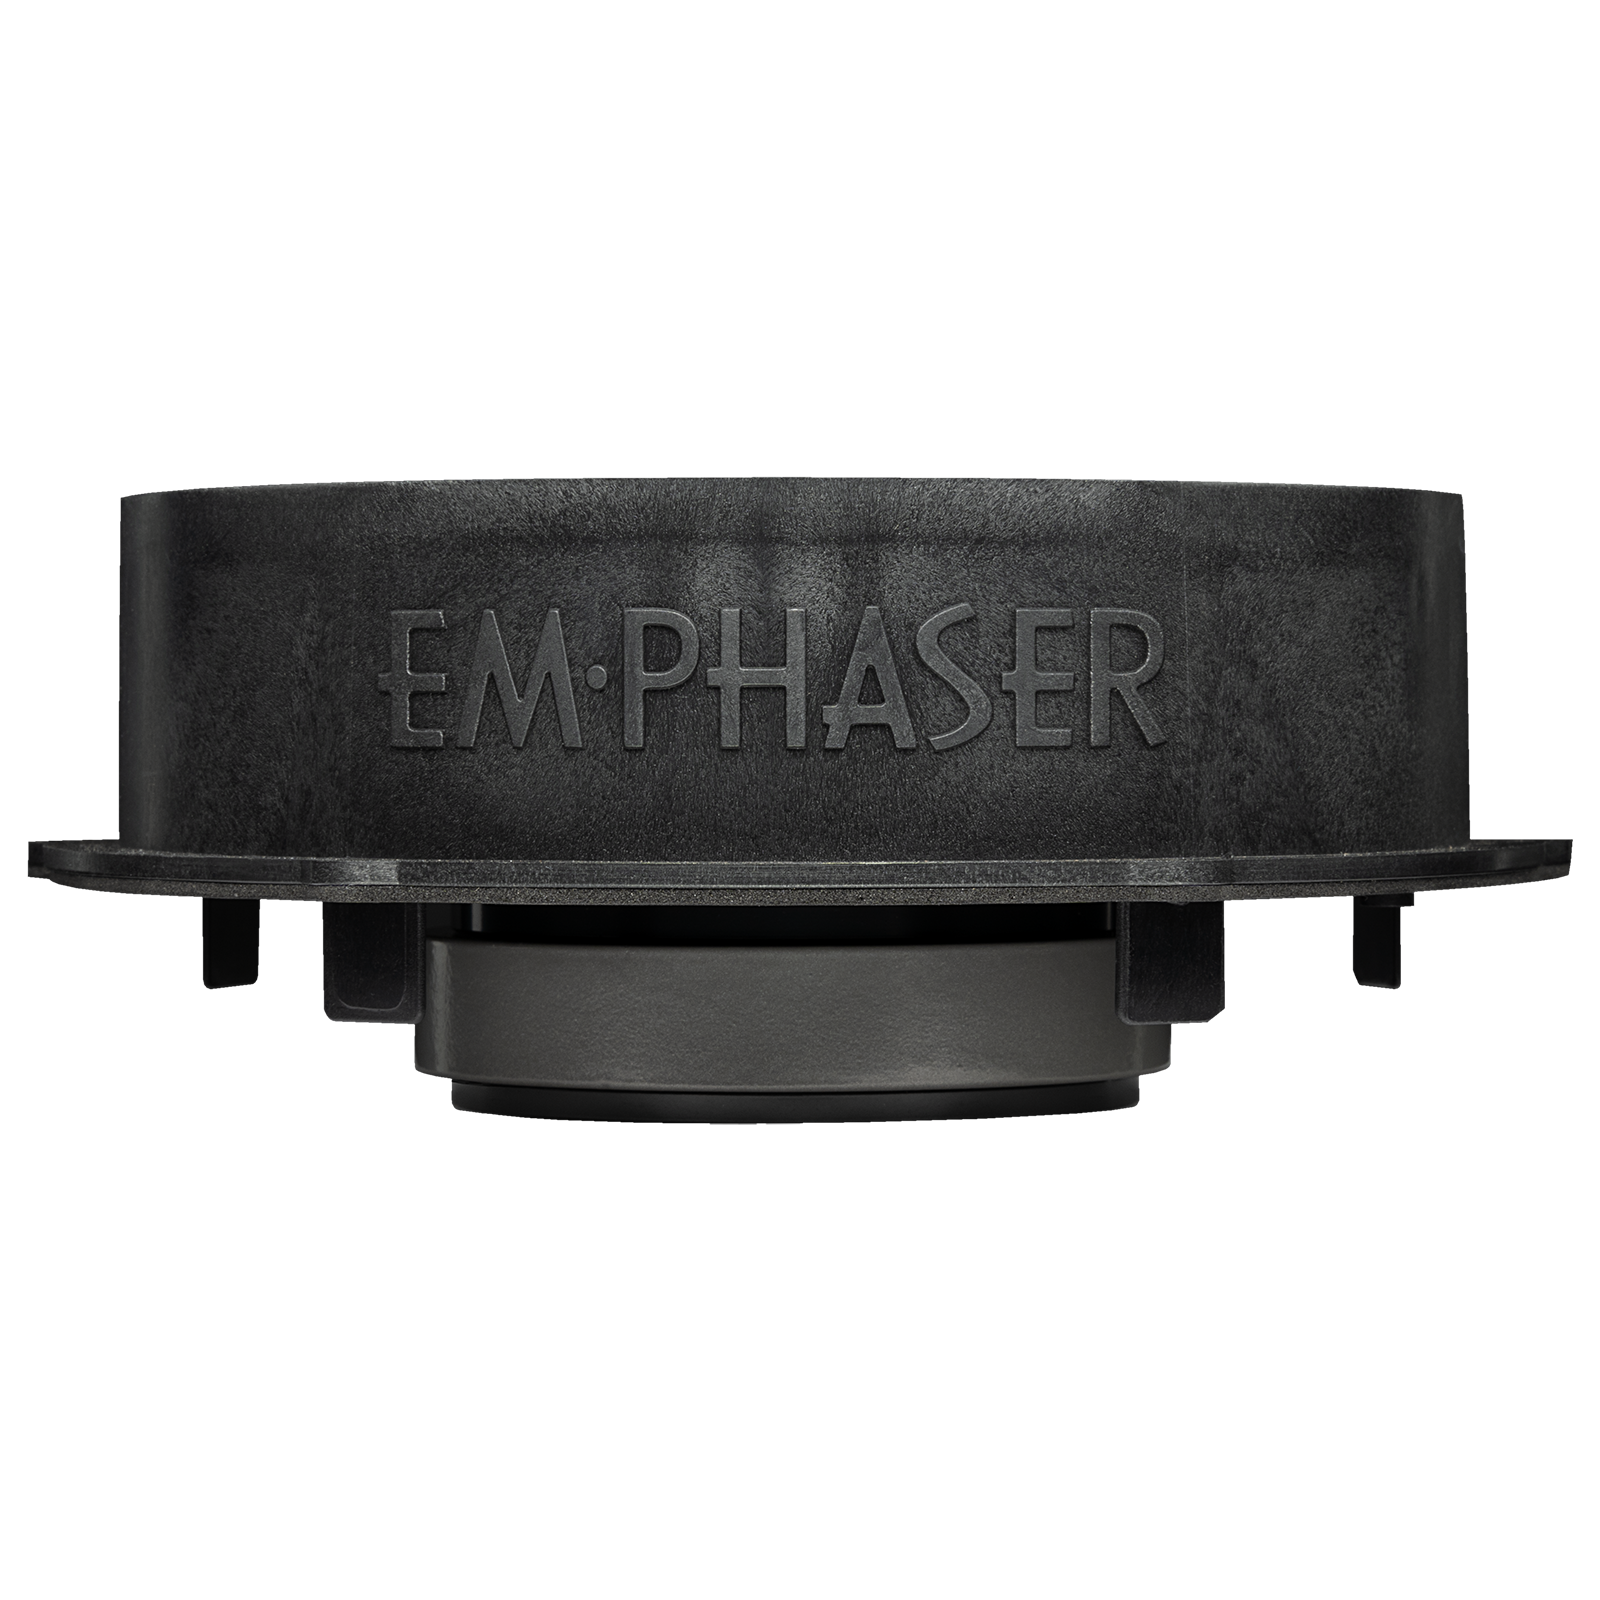 EMPHASER EM-VWFX180 Plug & Play 18 cm (7“) 2-Wege Kombo Lautsprecher Set kompatibel mit VW, Seat, Skoda, Soundsystem für Tür Einbau